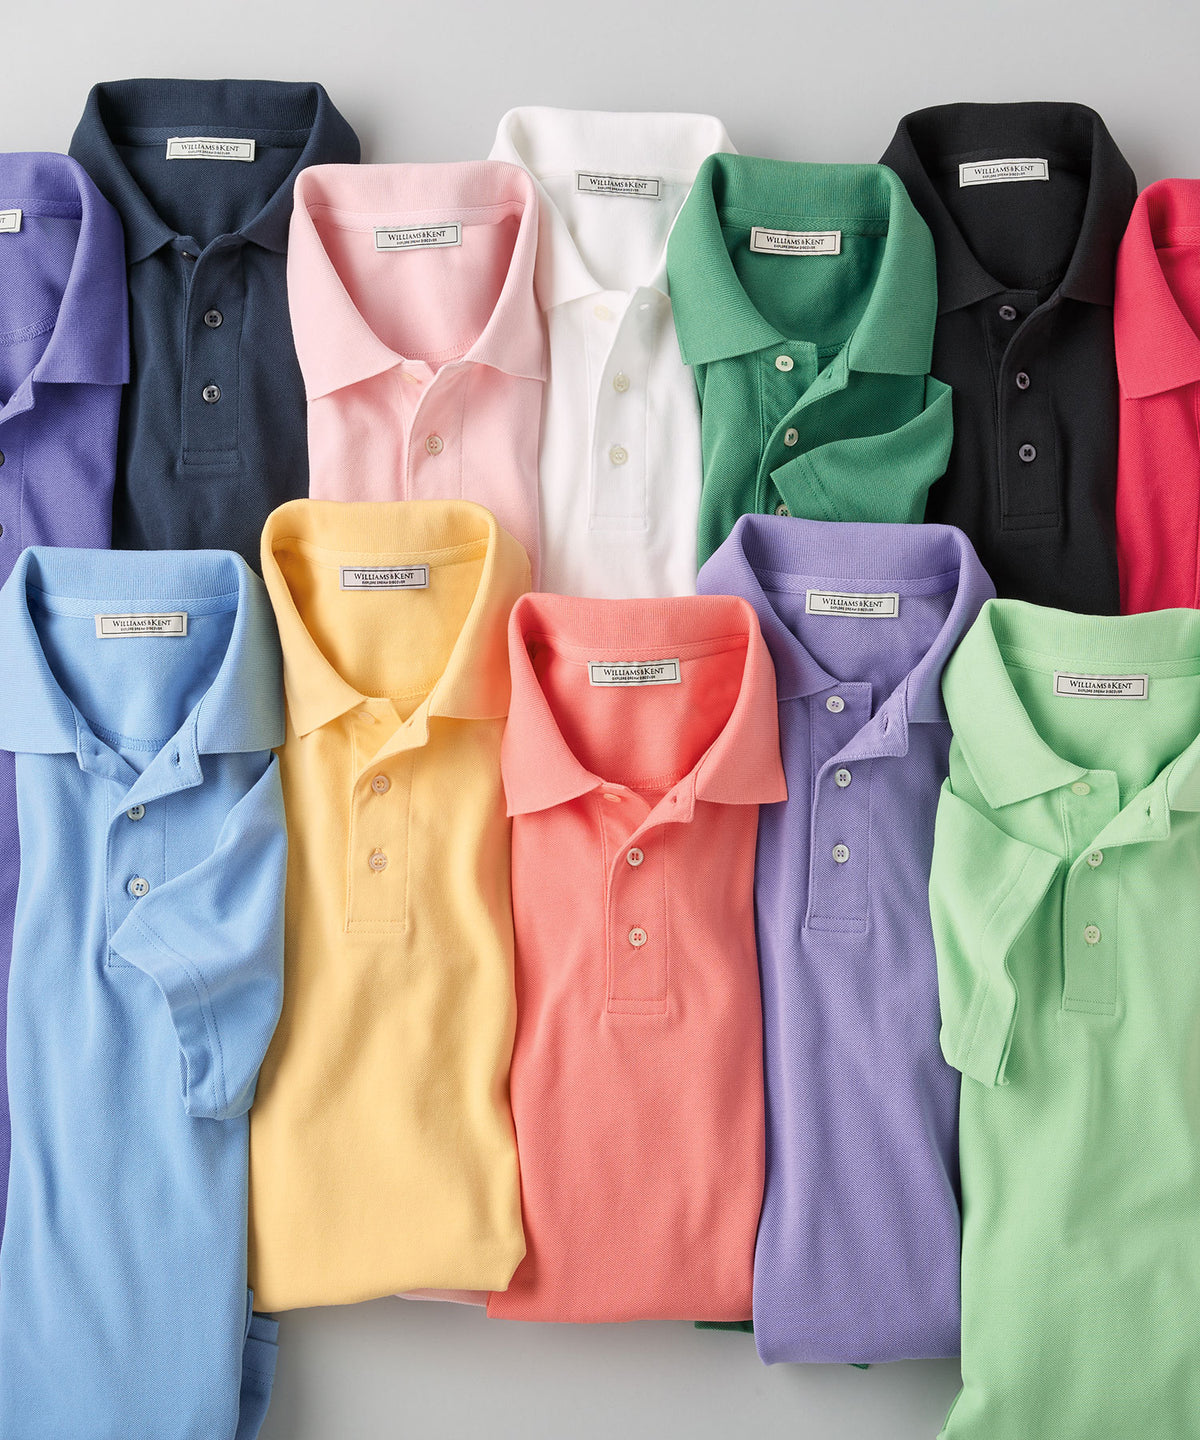 Pima Cotton Pique Knit Collar Polo Shirt